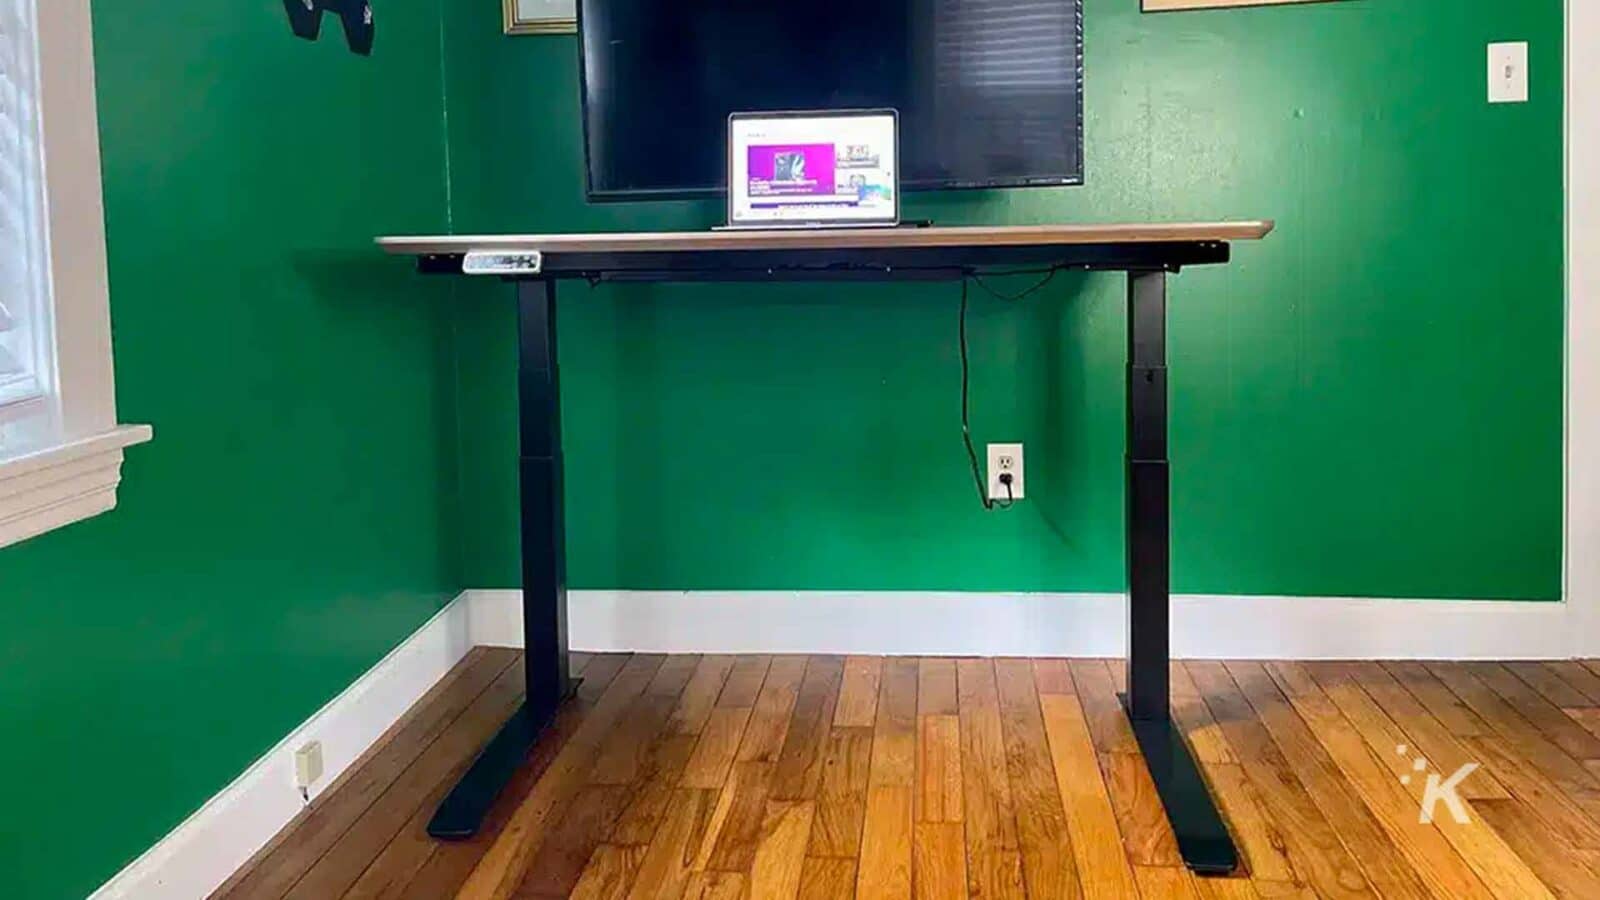 المكتب يحمل جهاز كمبيوتر.